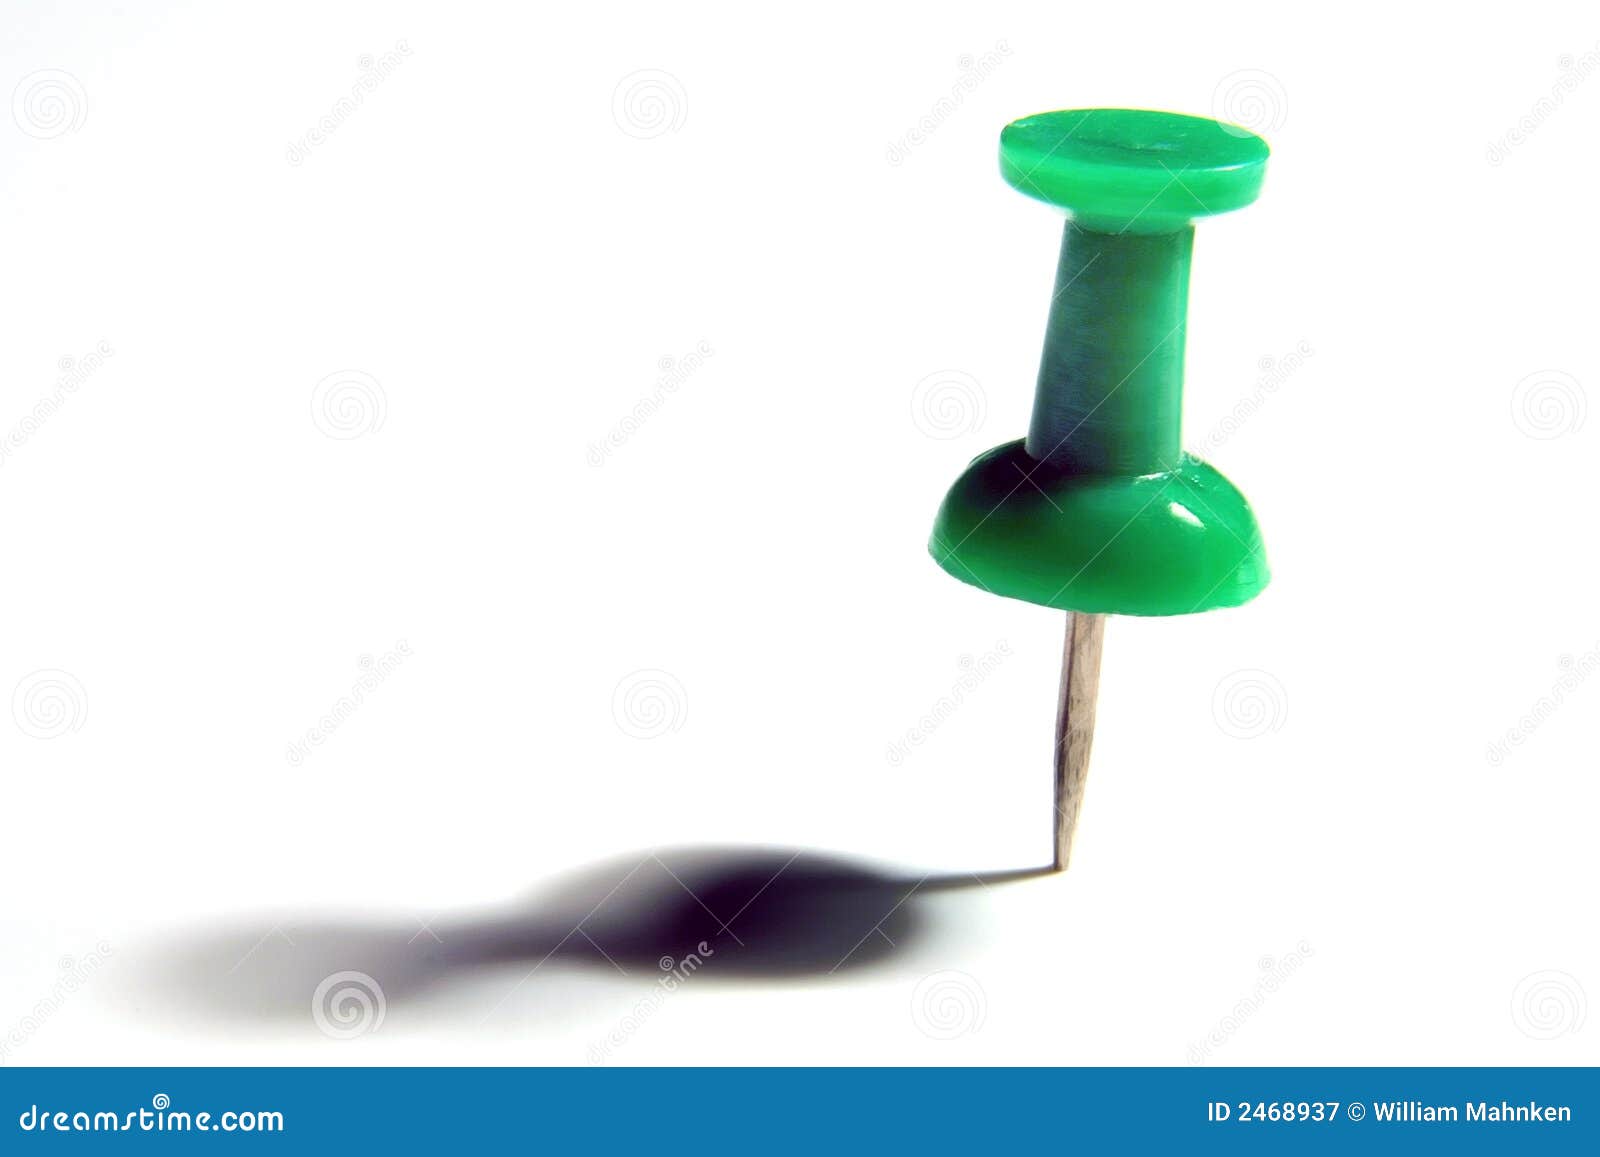 Green thumb tack stock image. Image of thumb, green, sharp - 2468937